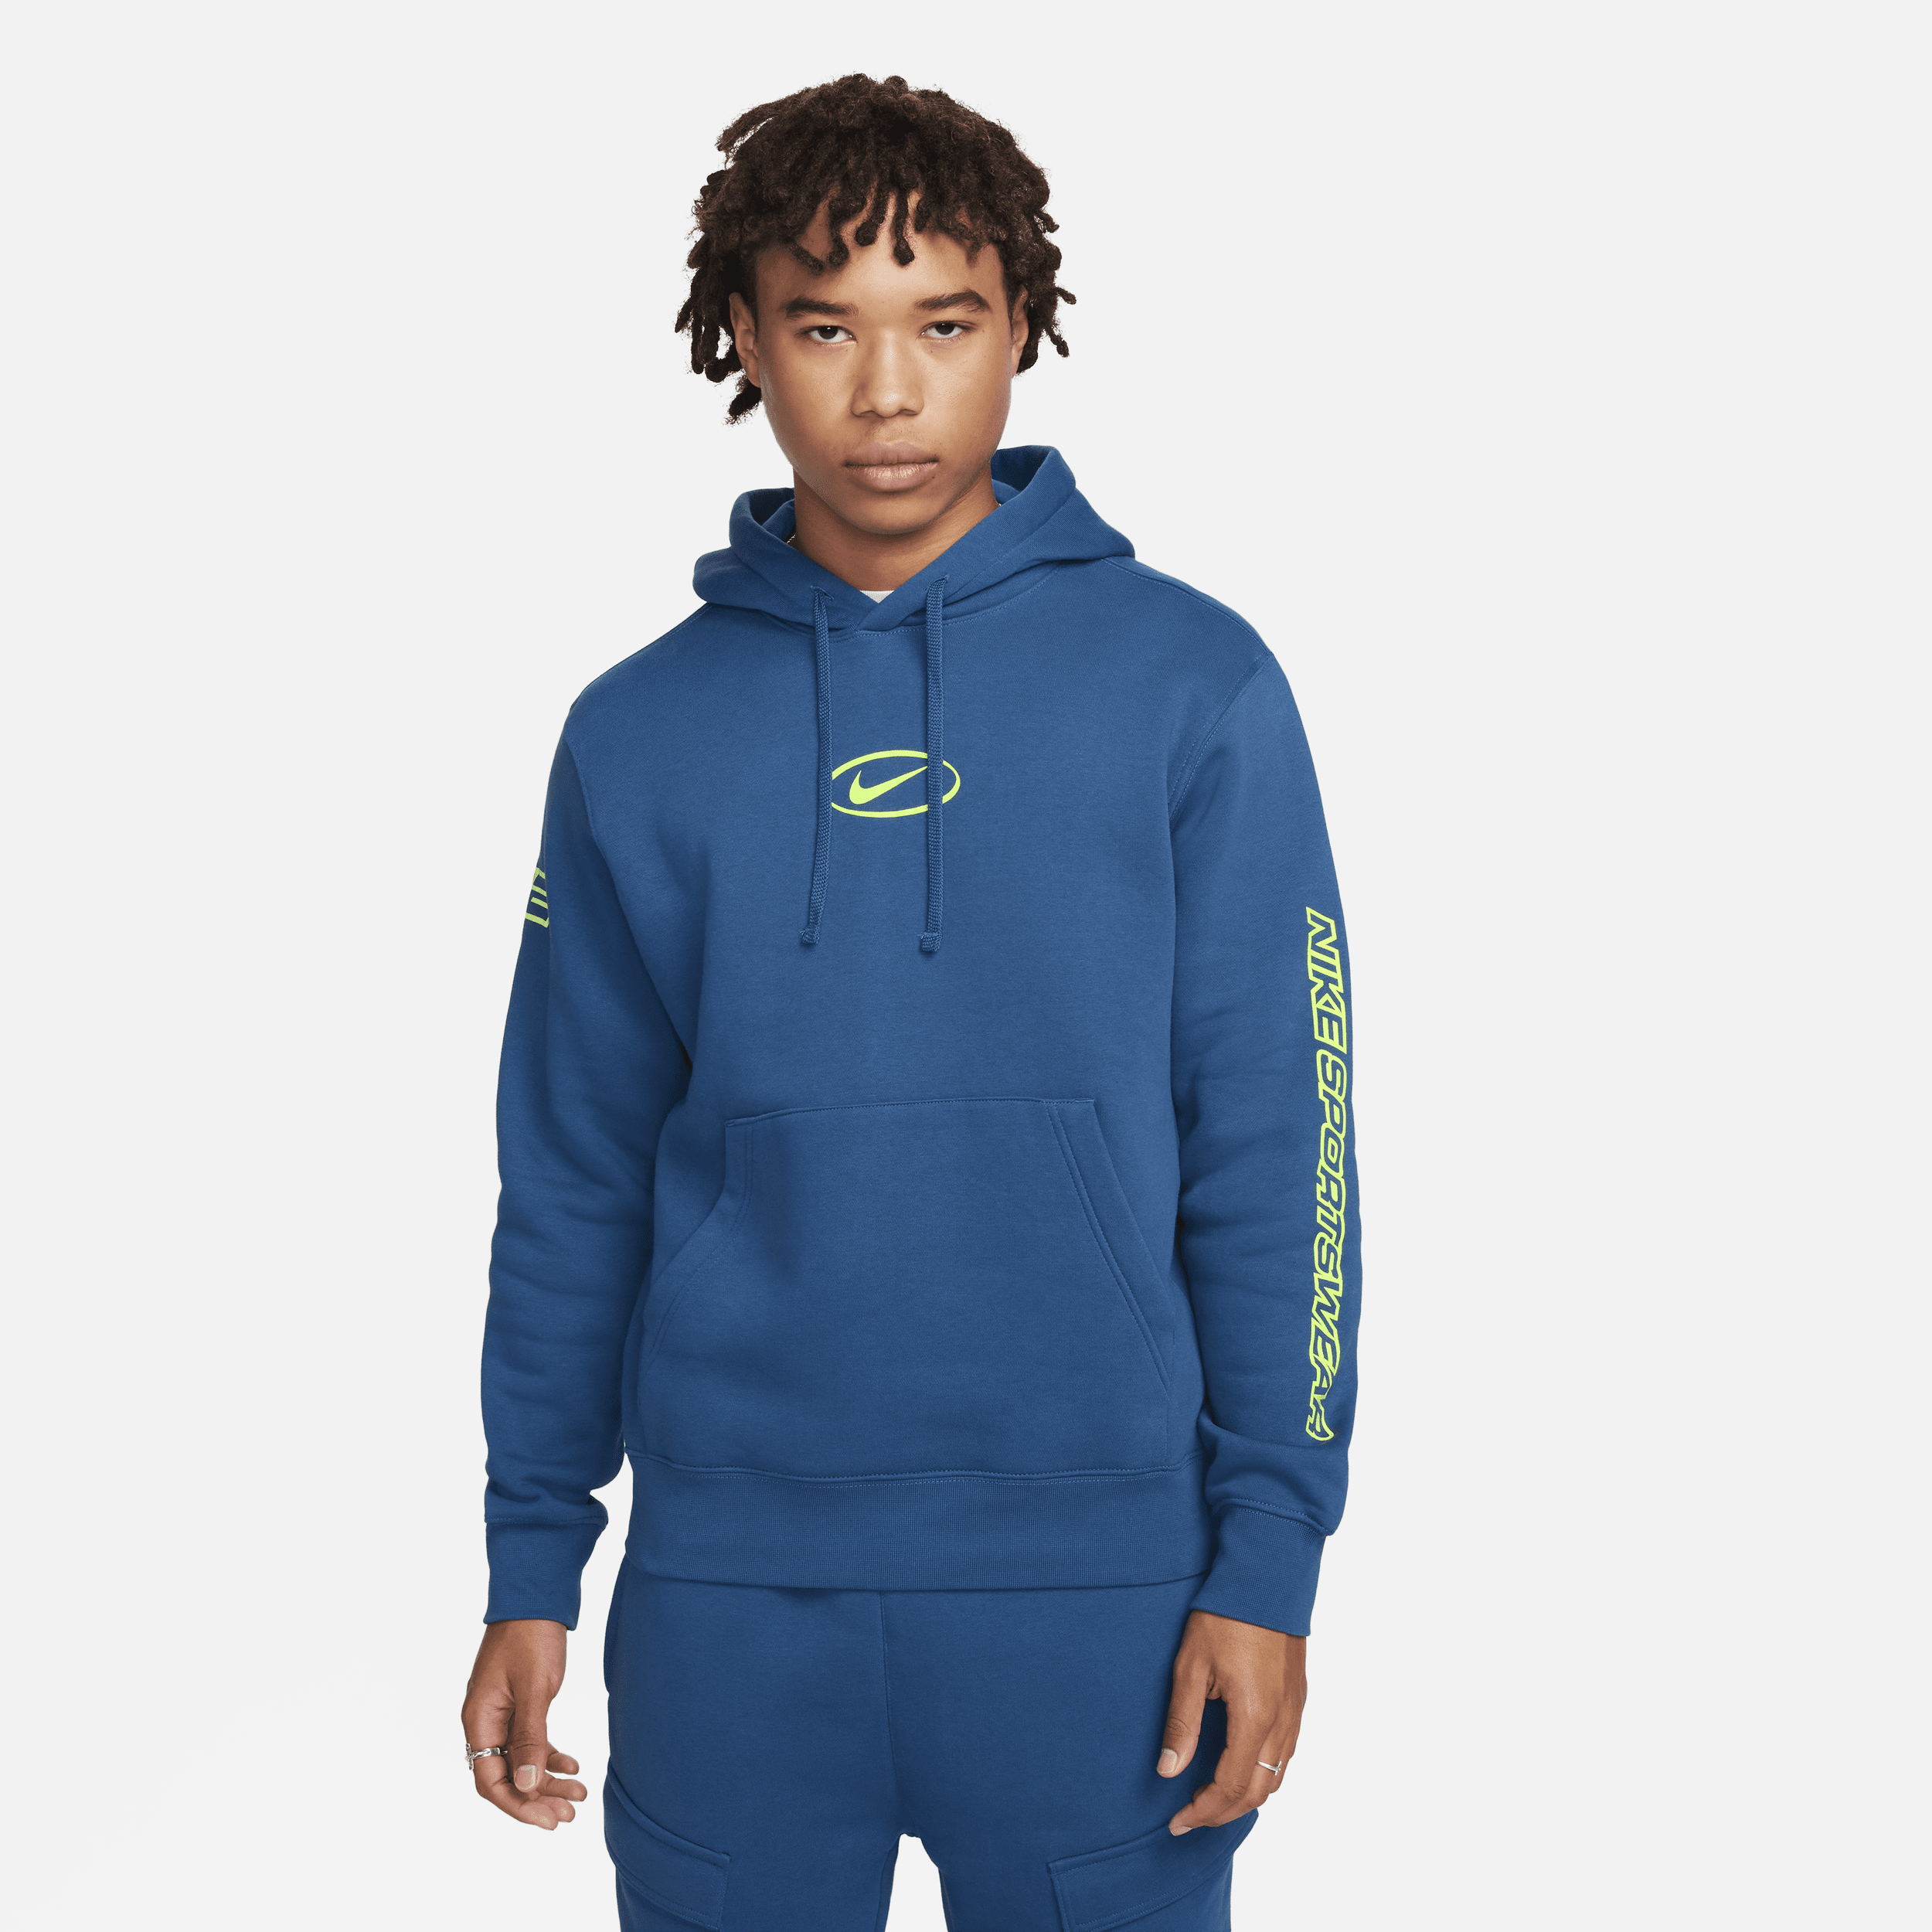 Felpa pullover con cappuccio Nike Sportswear - Uomo - Blu